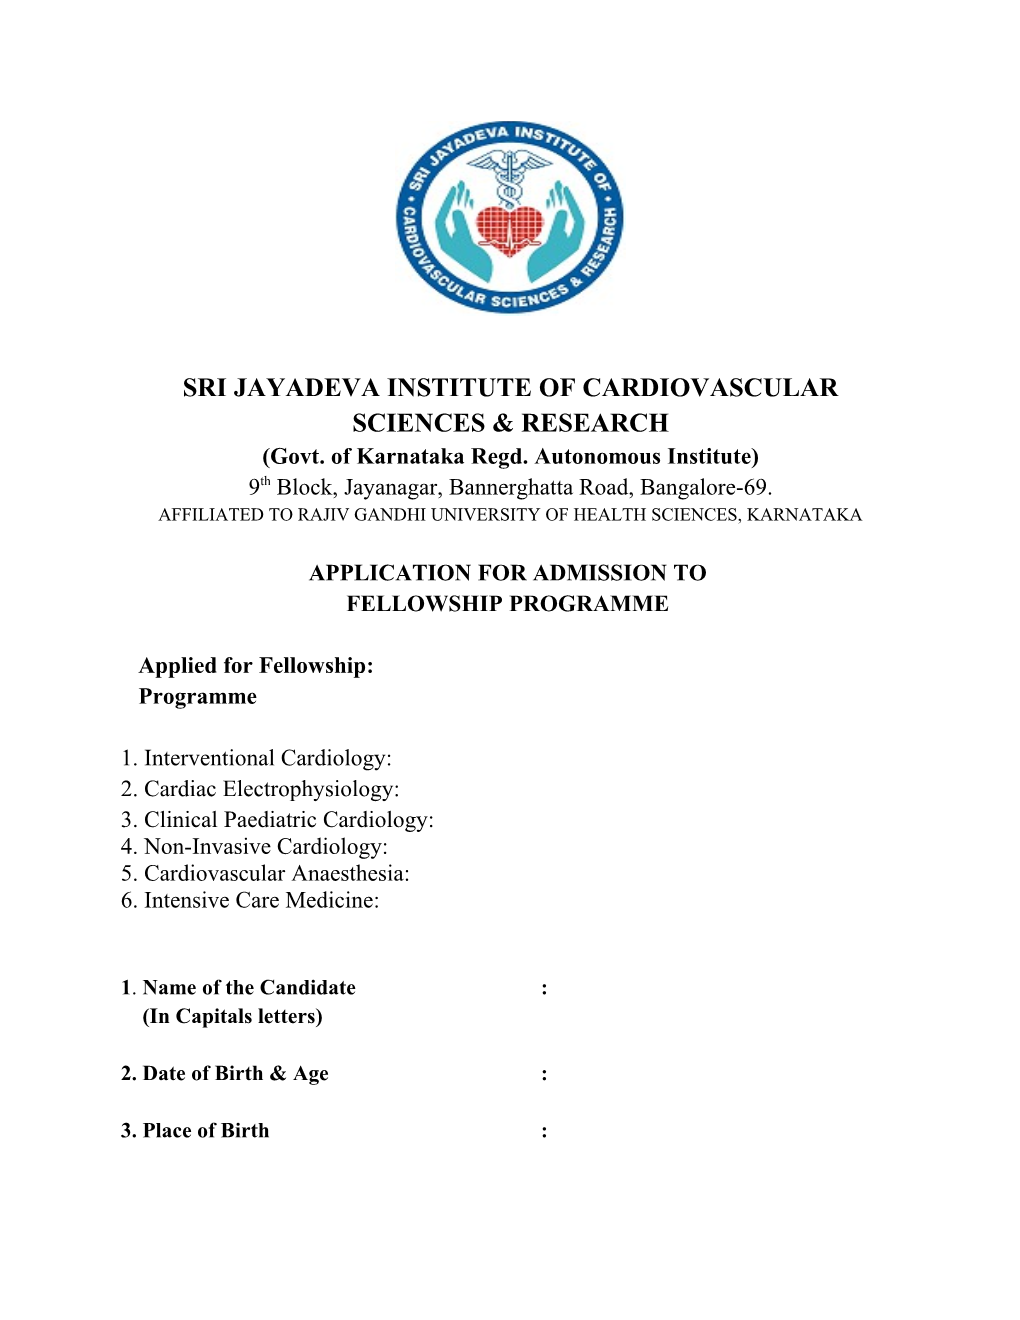 Sri Jayadeva Institute of Cardiovascular Sciences & Research